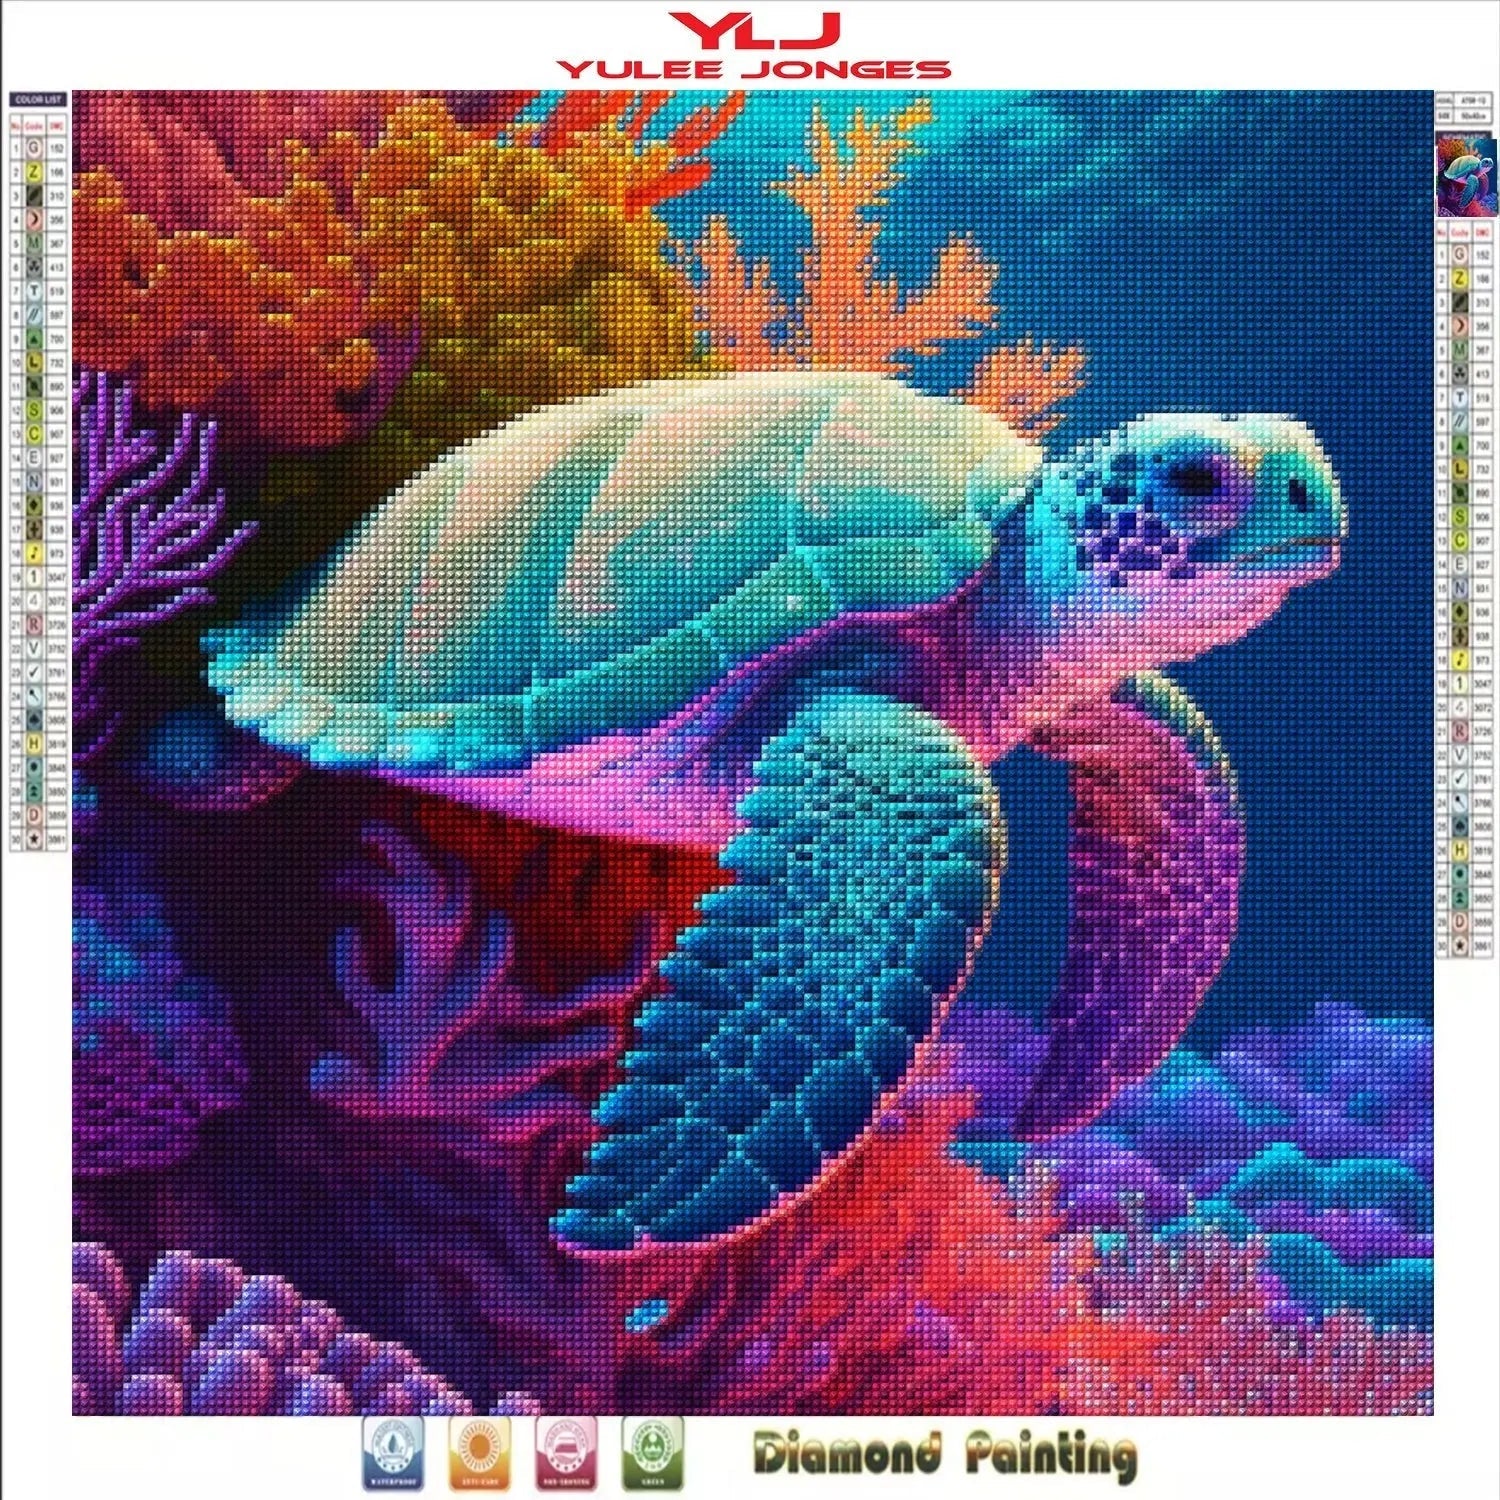 Frameless Diy 5d Artificial Diamond Painting Turtle Diamond - Temu